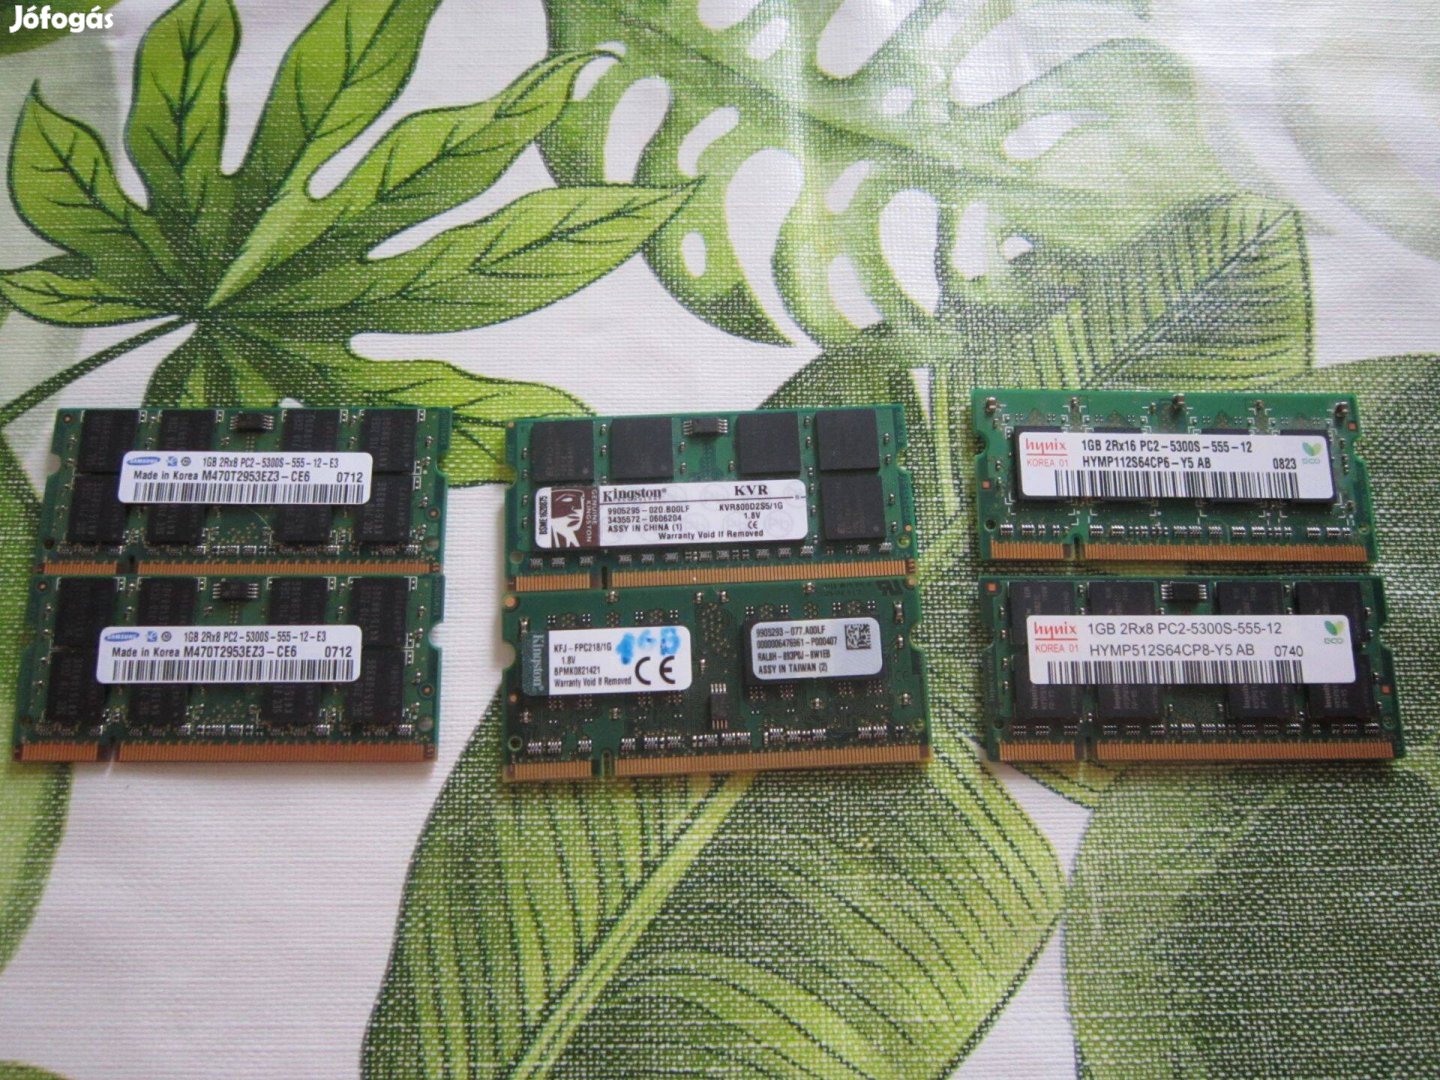 DDR2 Laptop RAM 6 darab együtt 1GB mind. Gépekben működtek * MPL aut